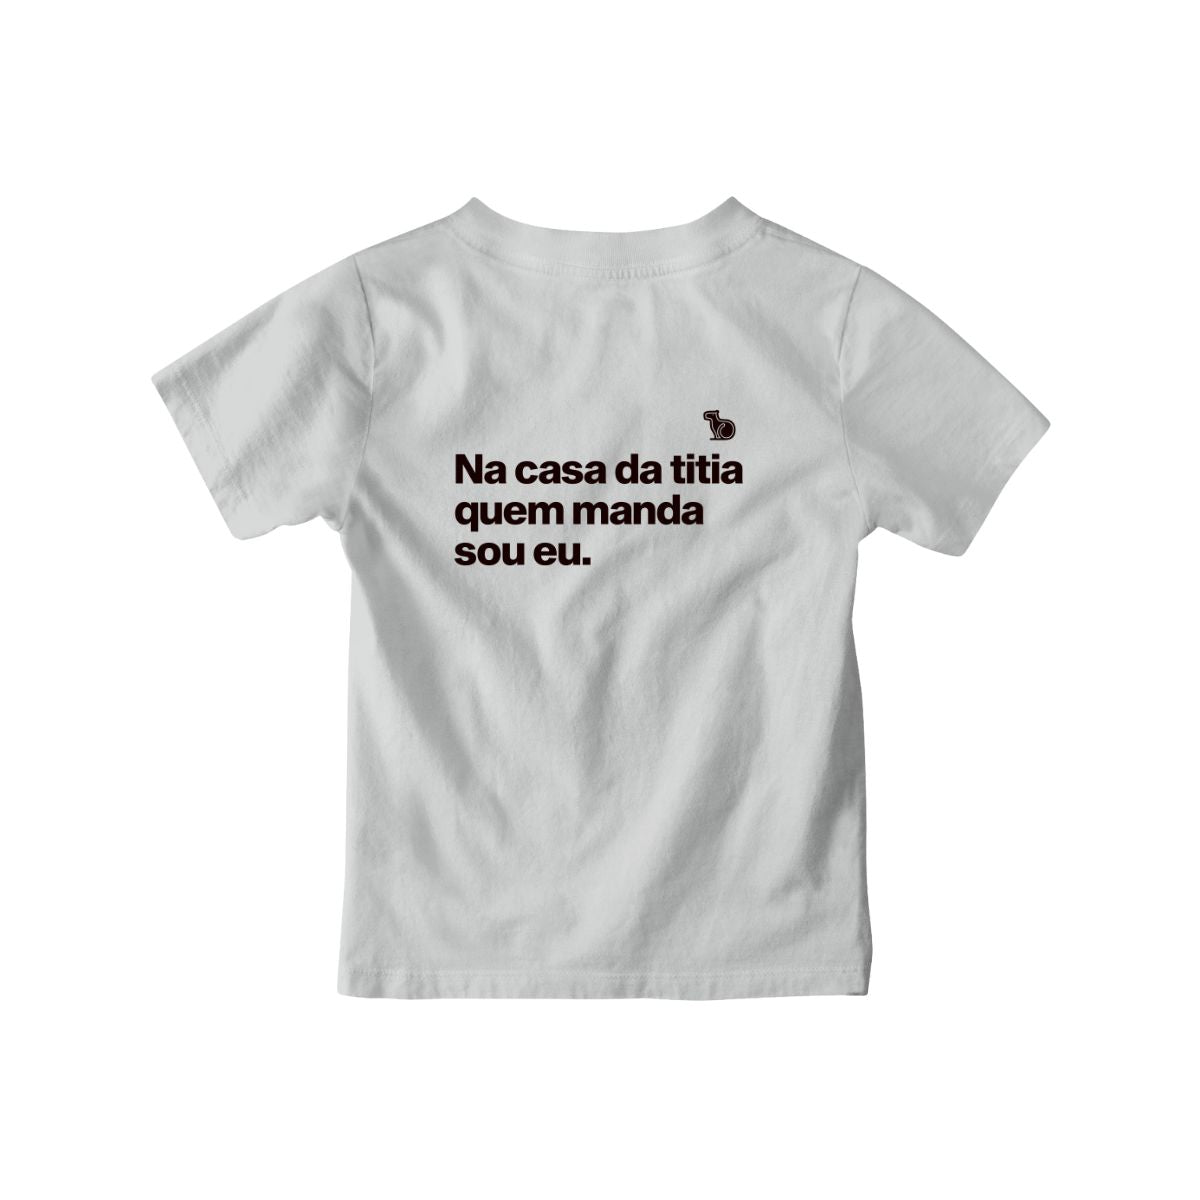 Camiseta infantil cinza com a frase "na casa da titia quem manda sou eu."